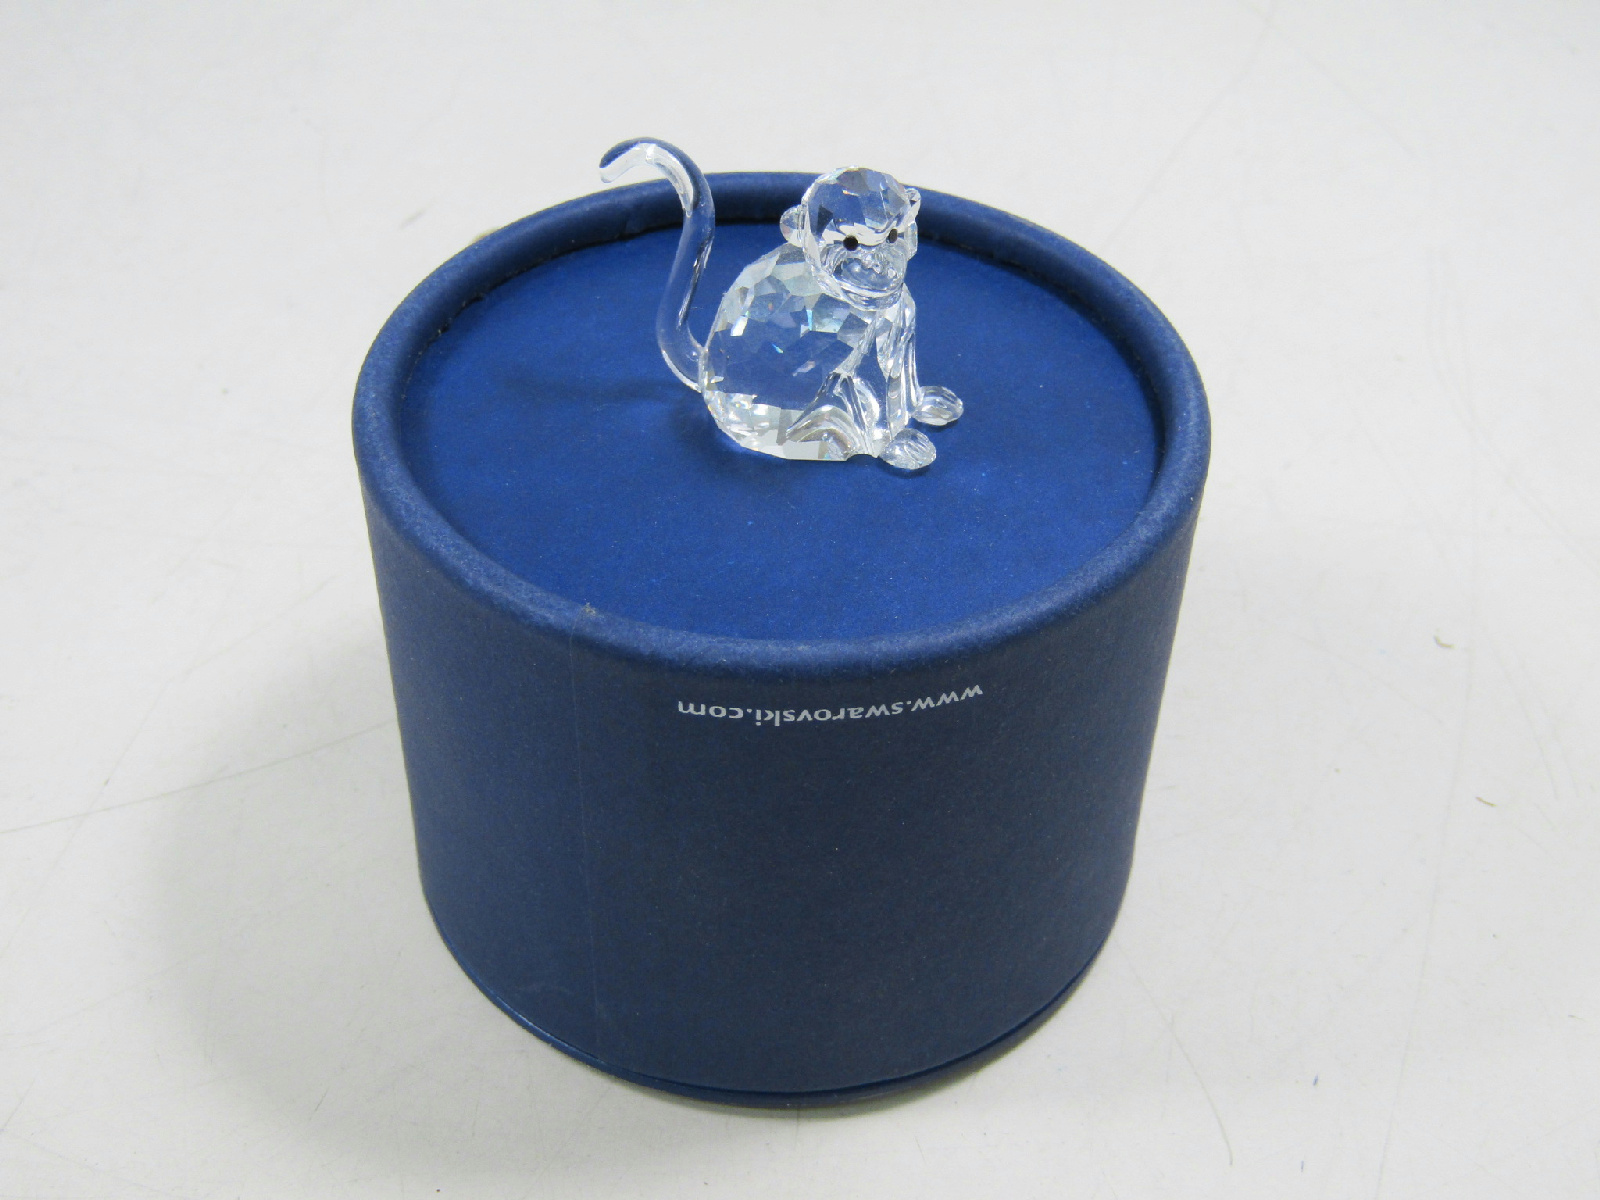 Swarovski Crystal Trinket Monkey Small Decoration Figurine in Box